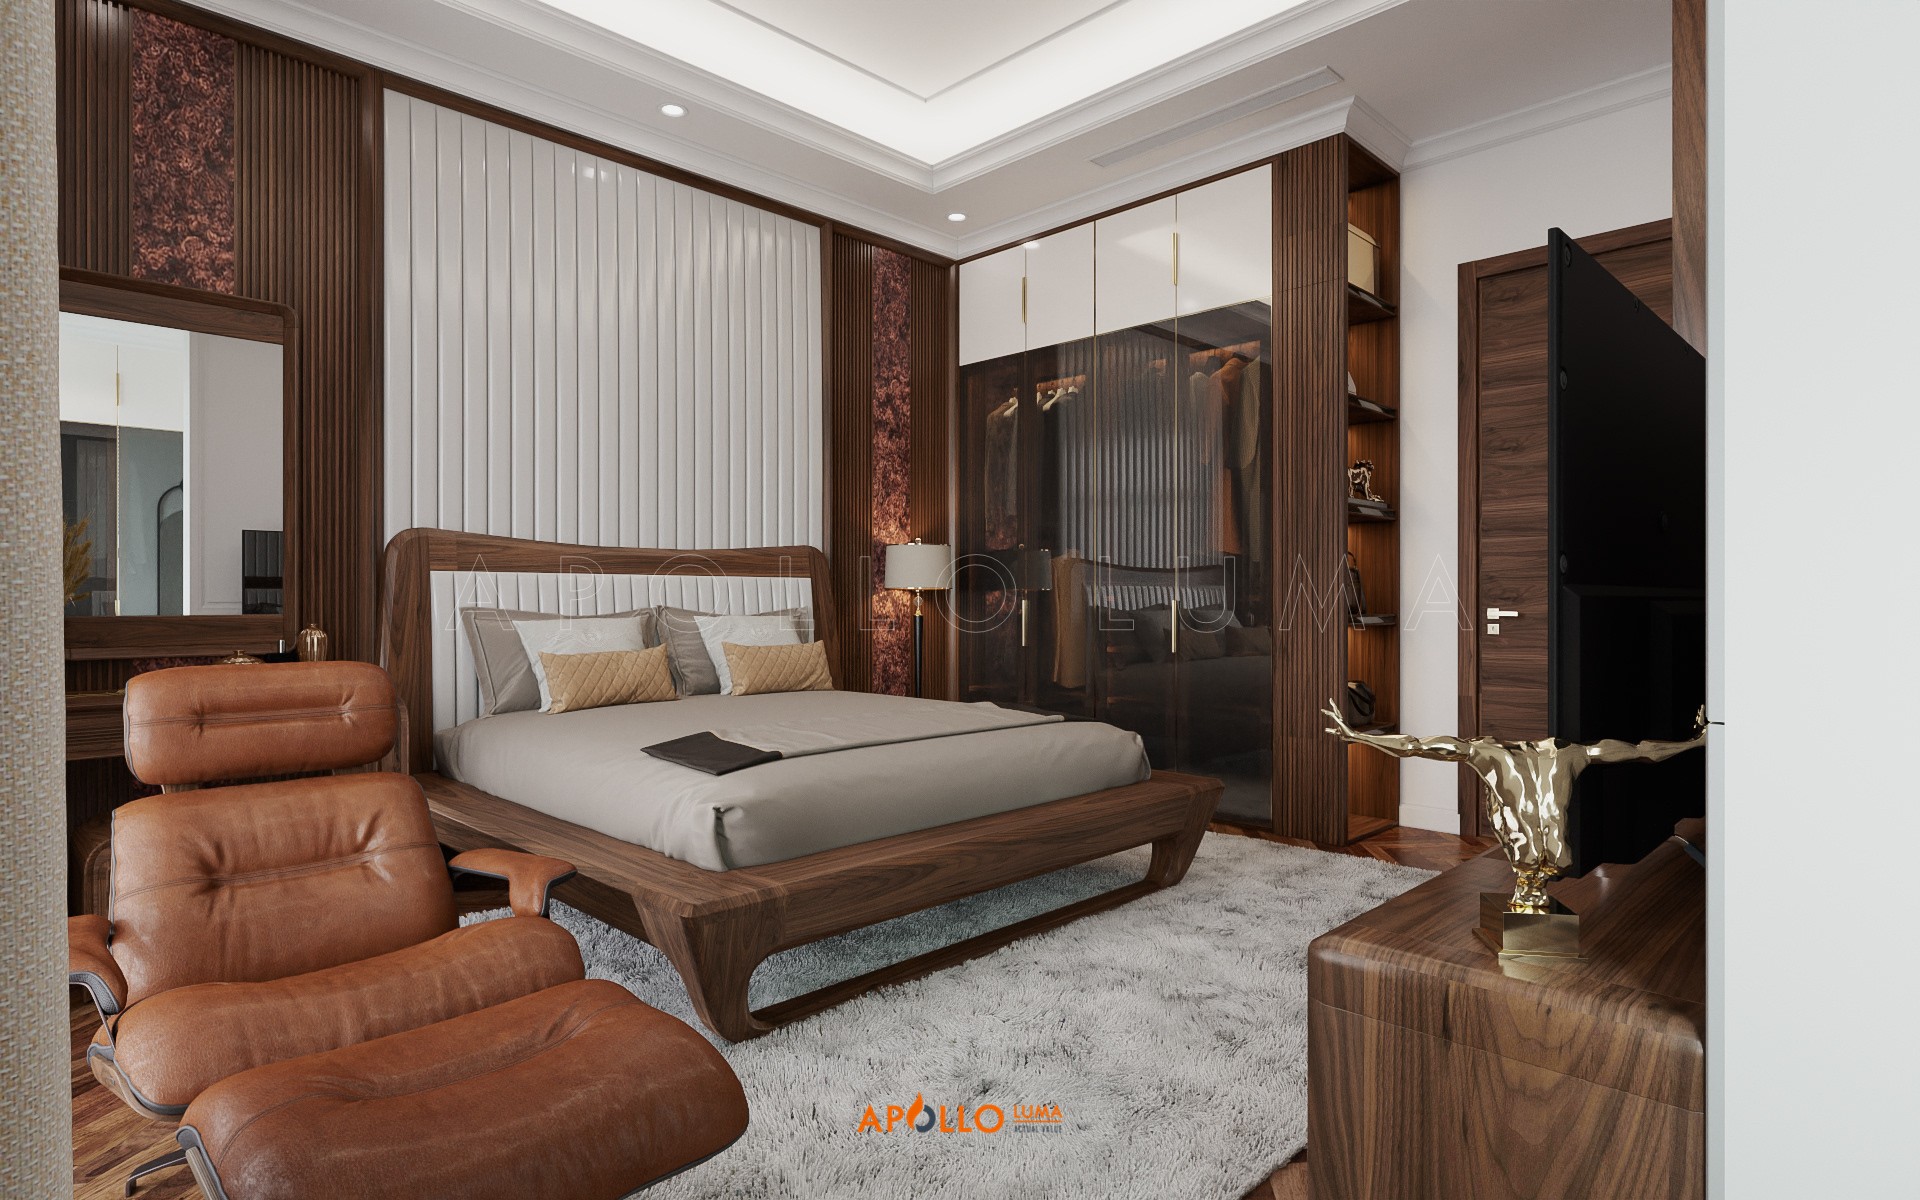 Giường ngủ gỗ Tần bì đẹp - Apollo TB02